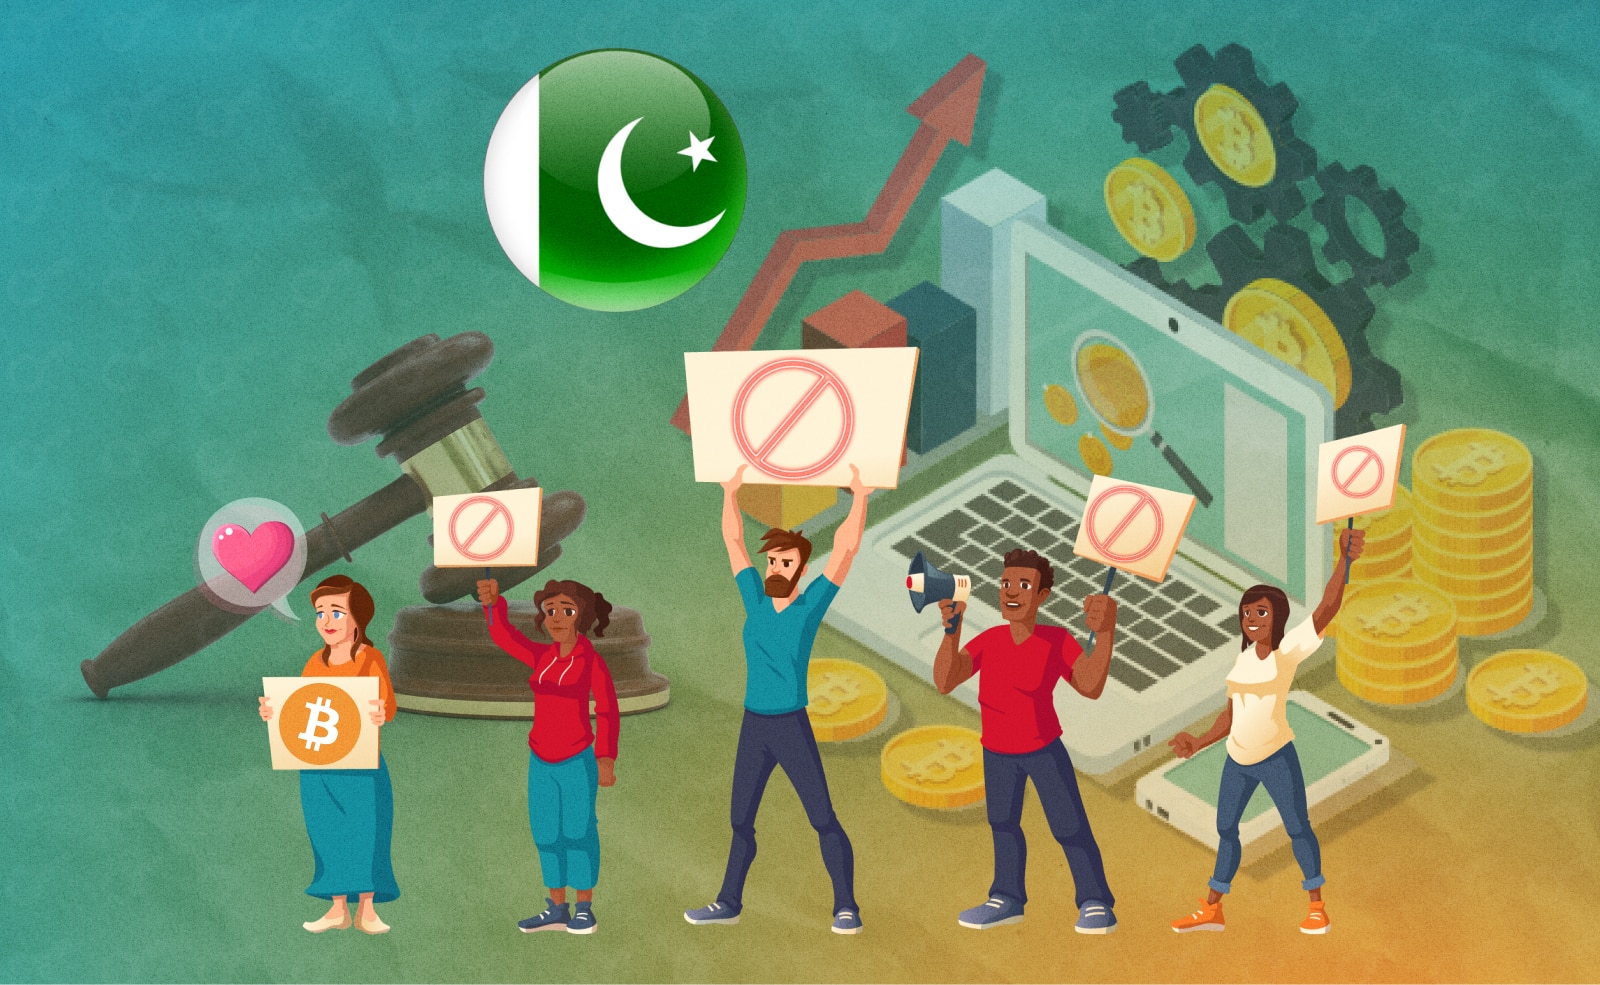 Пакистан протестует против «валюты контроля» CBDC. Заглавный коллаж новости.